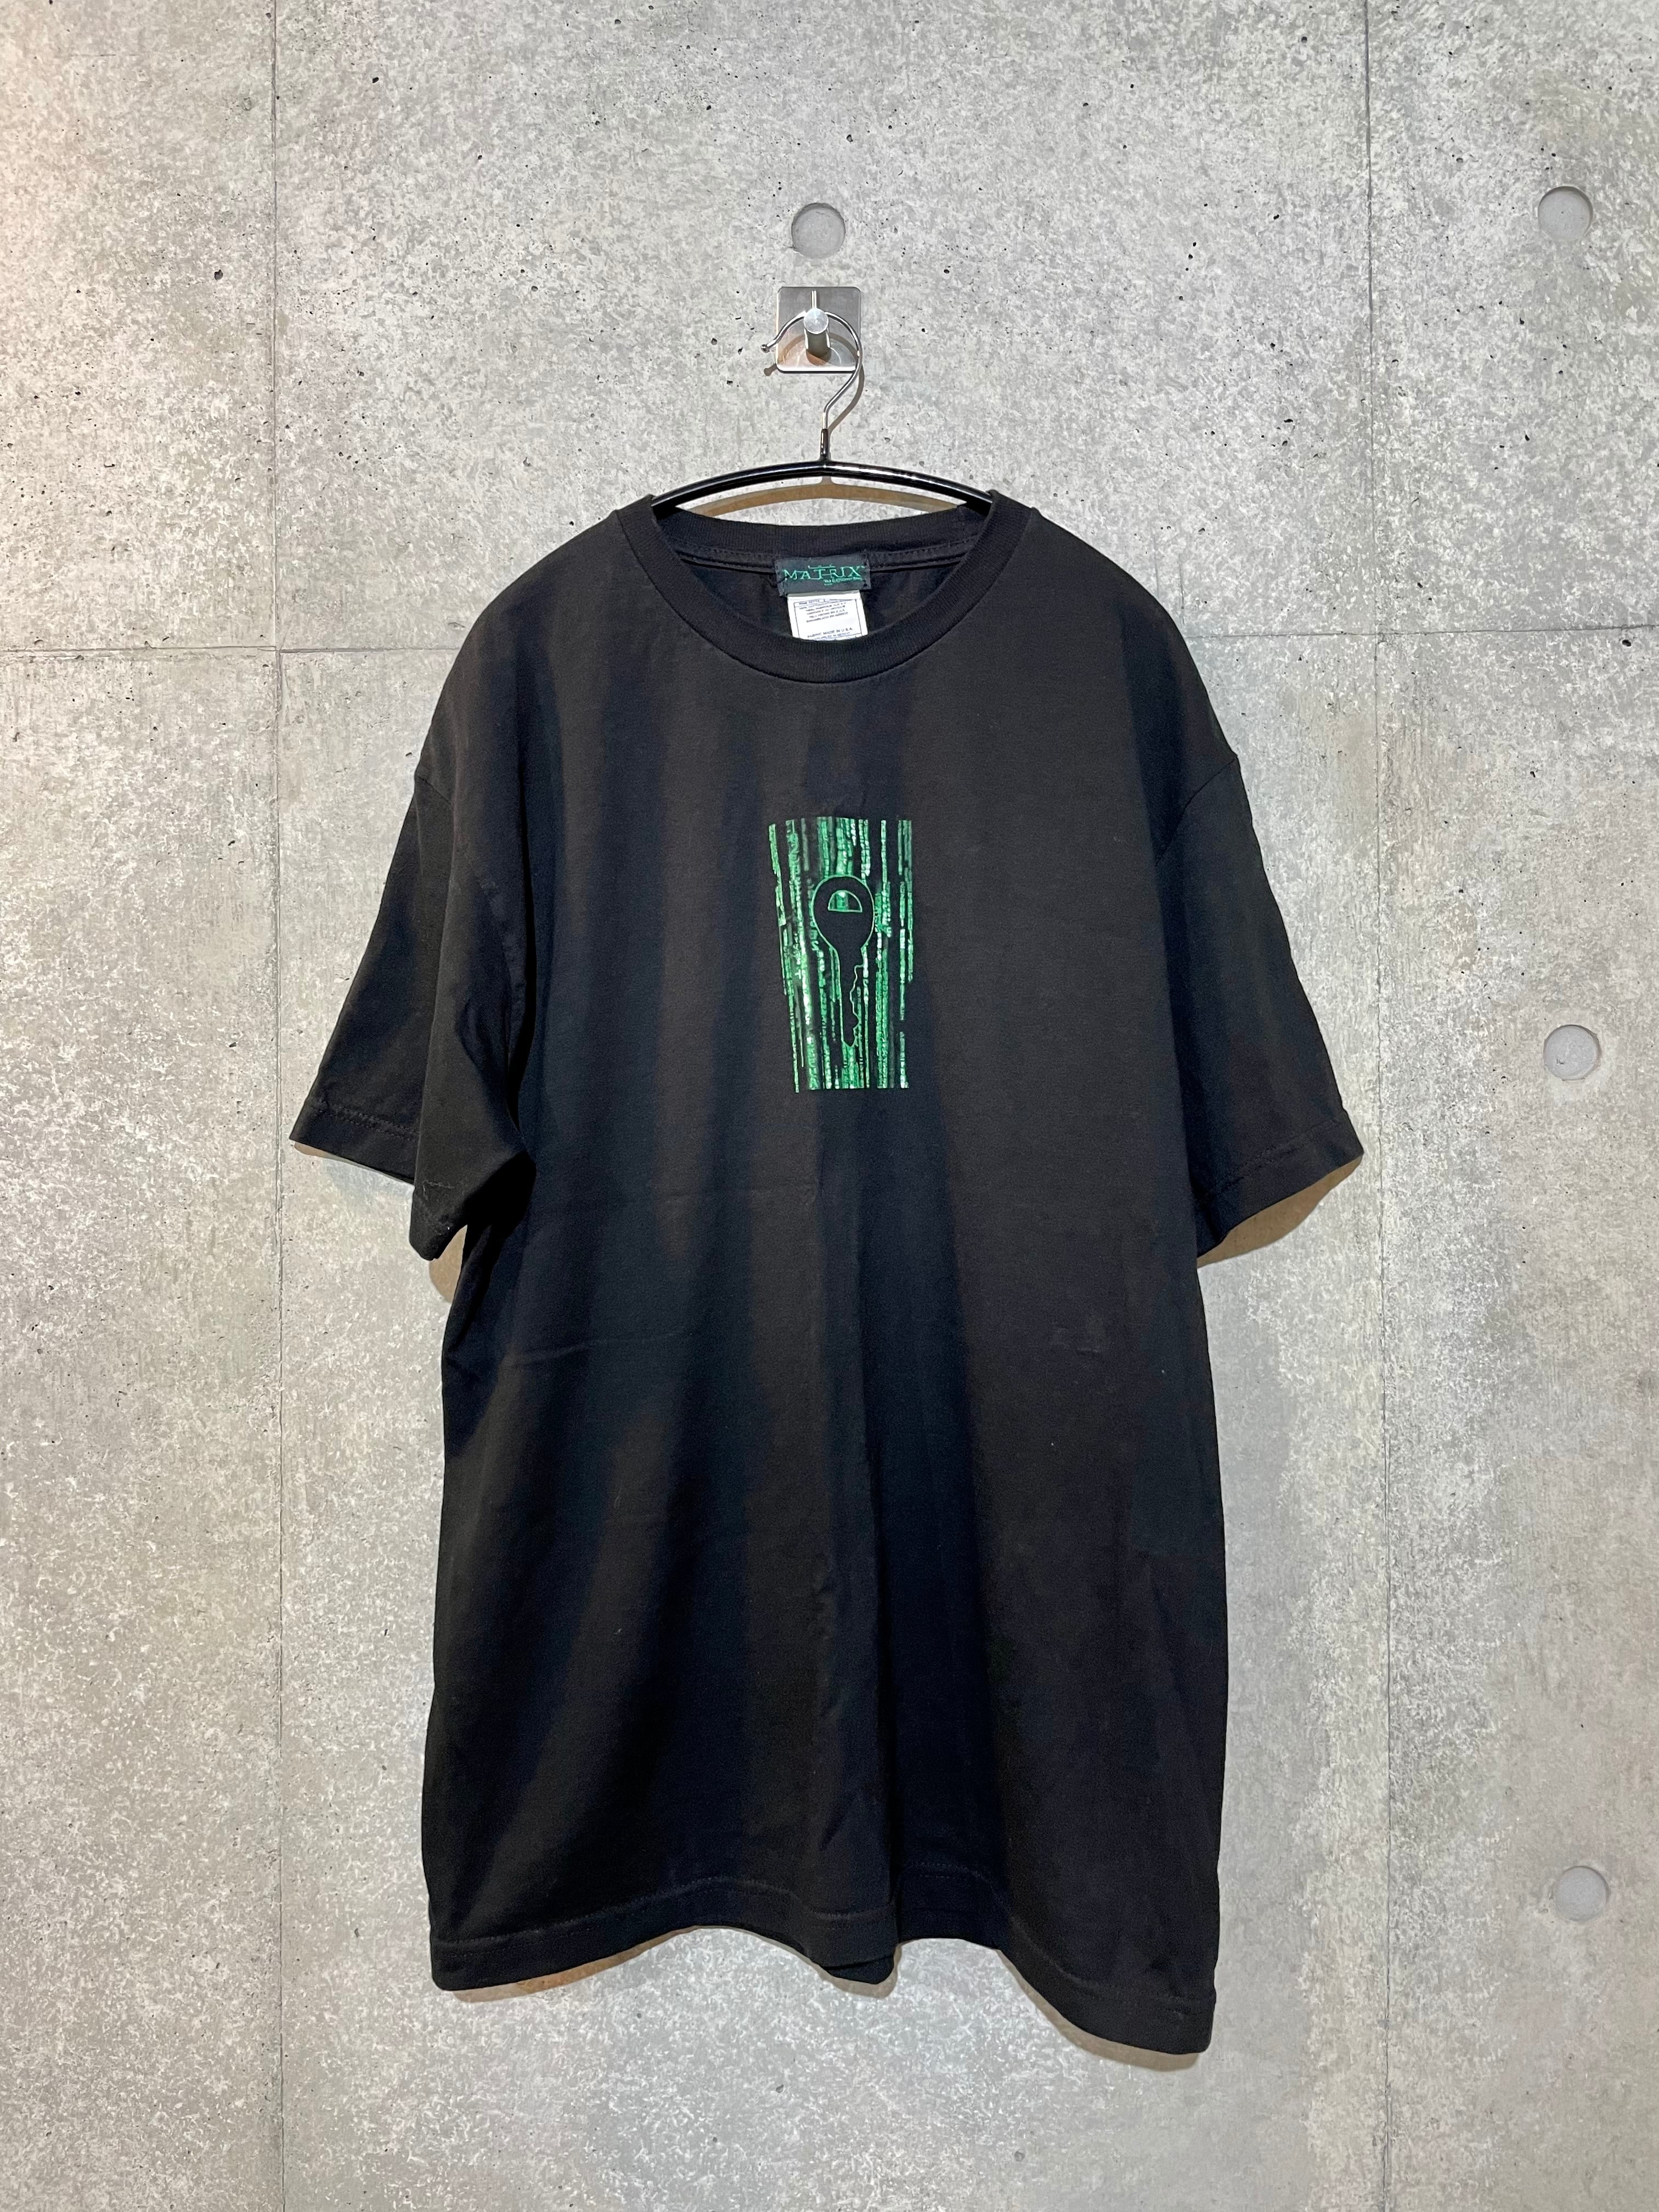 【ムービーTシャツ】MATRIX マトリックス 90s 00s 　ビンテージカラーブラック